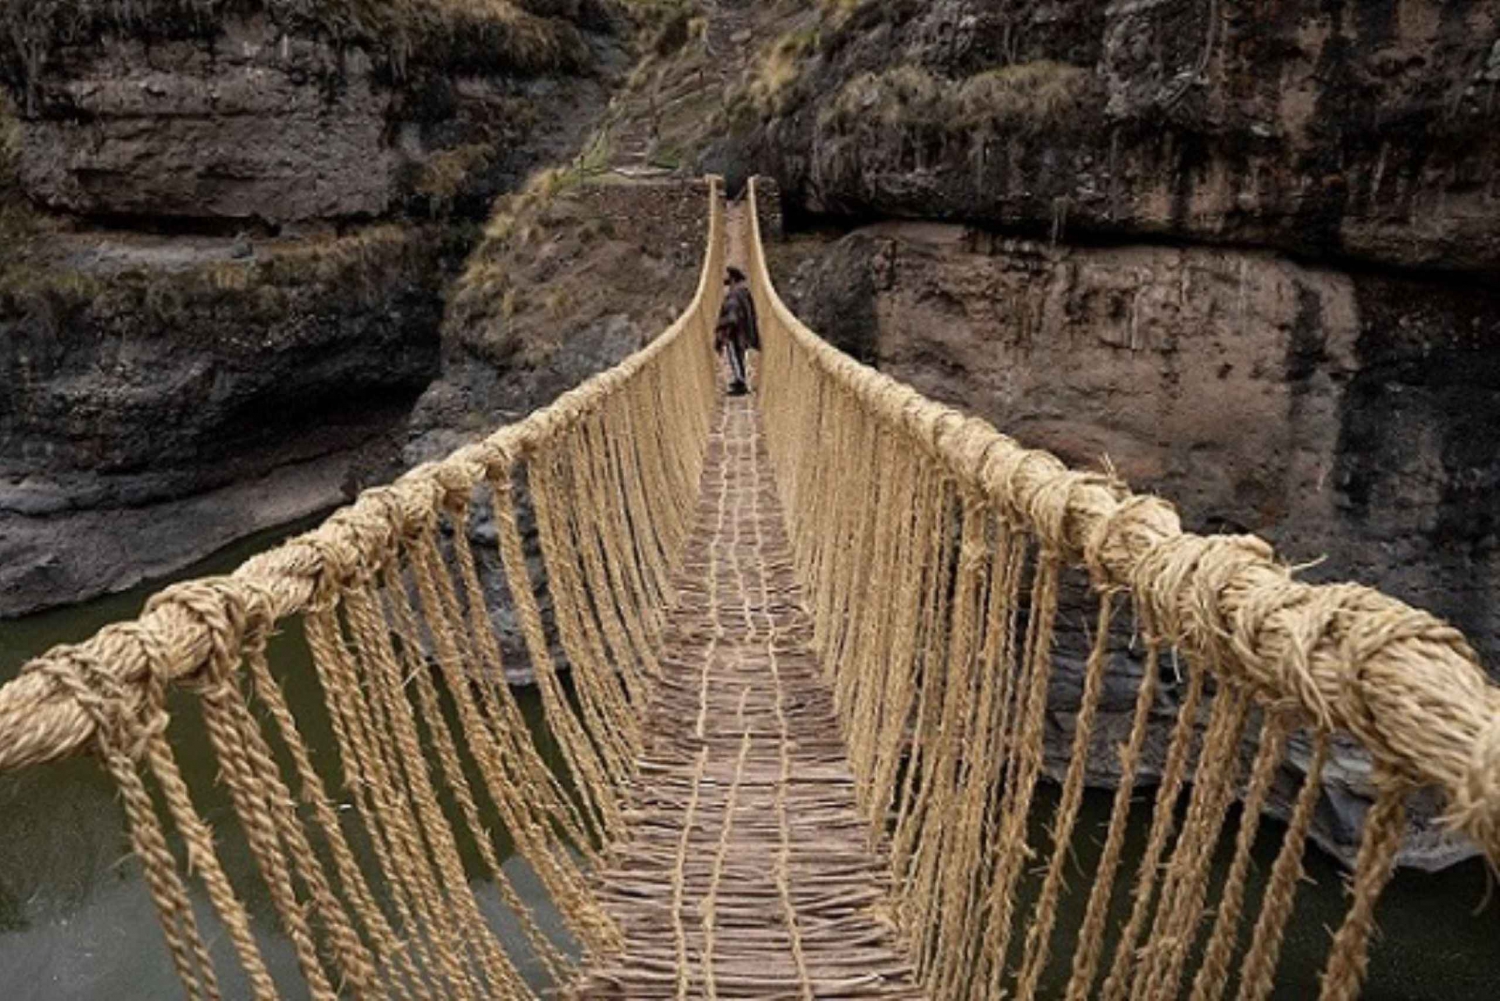 Puente Inca de Qeswachaka, el último puente inca que se conserva 1 día